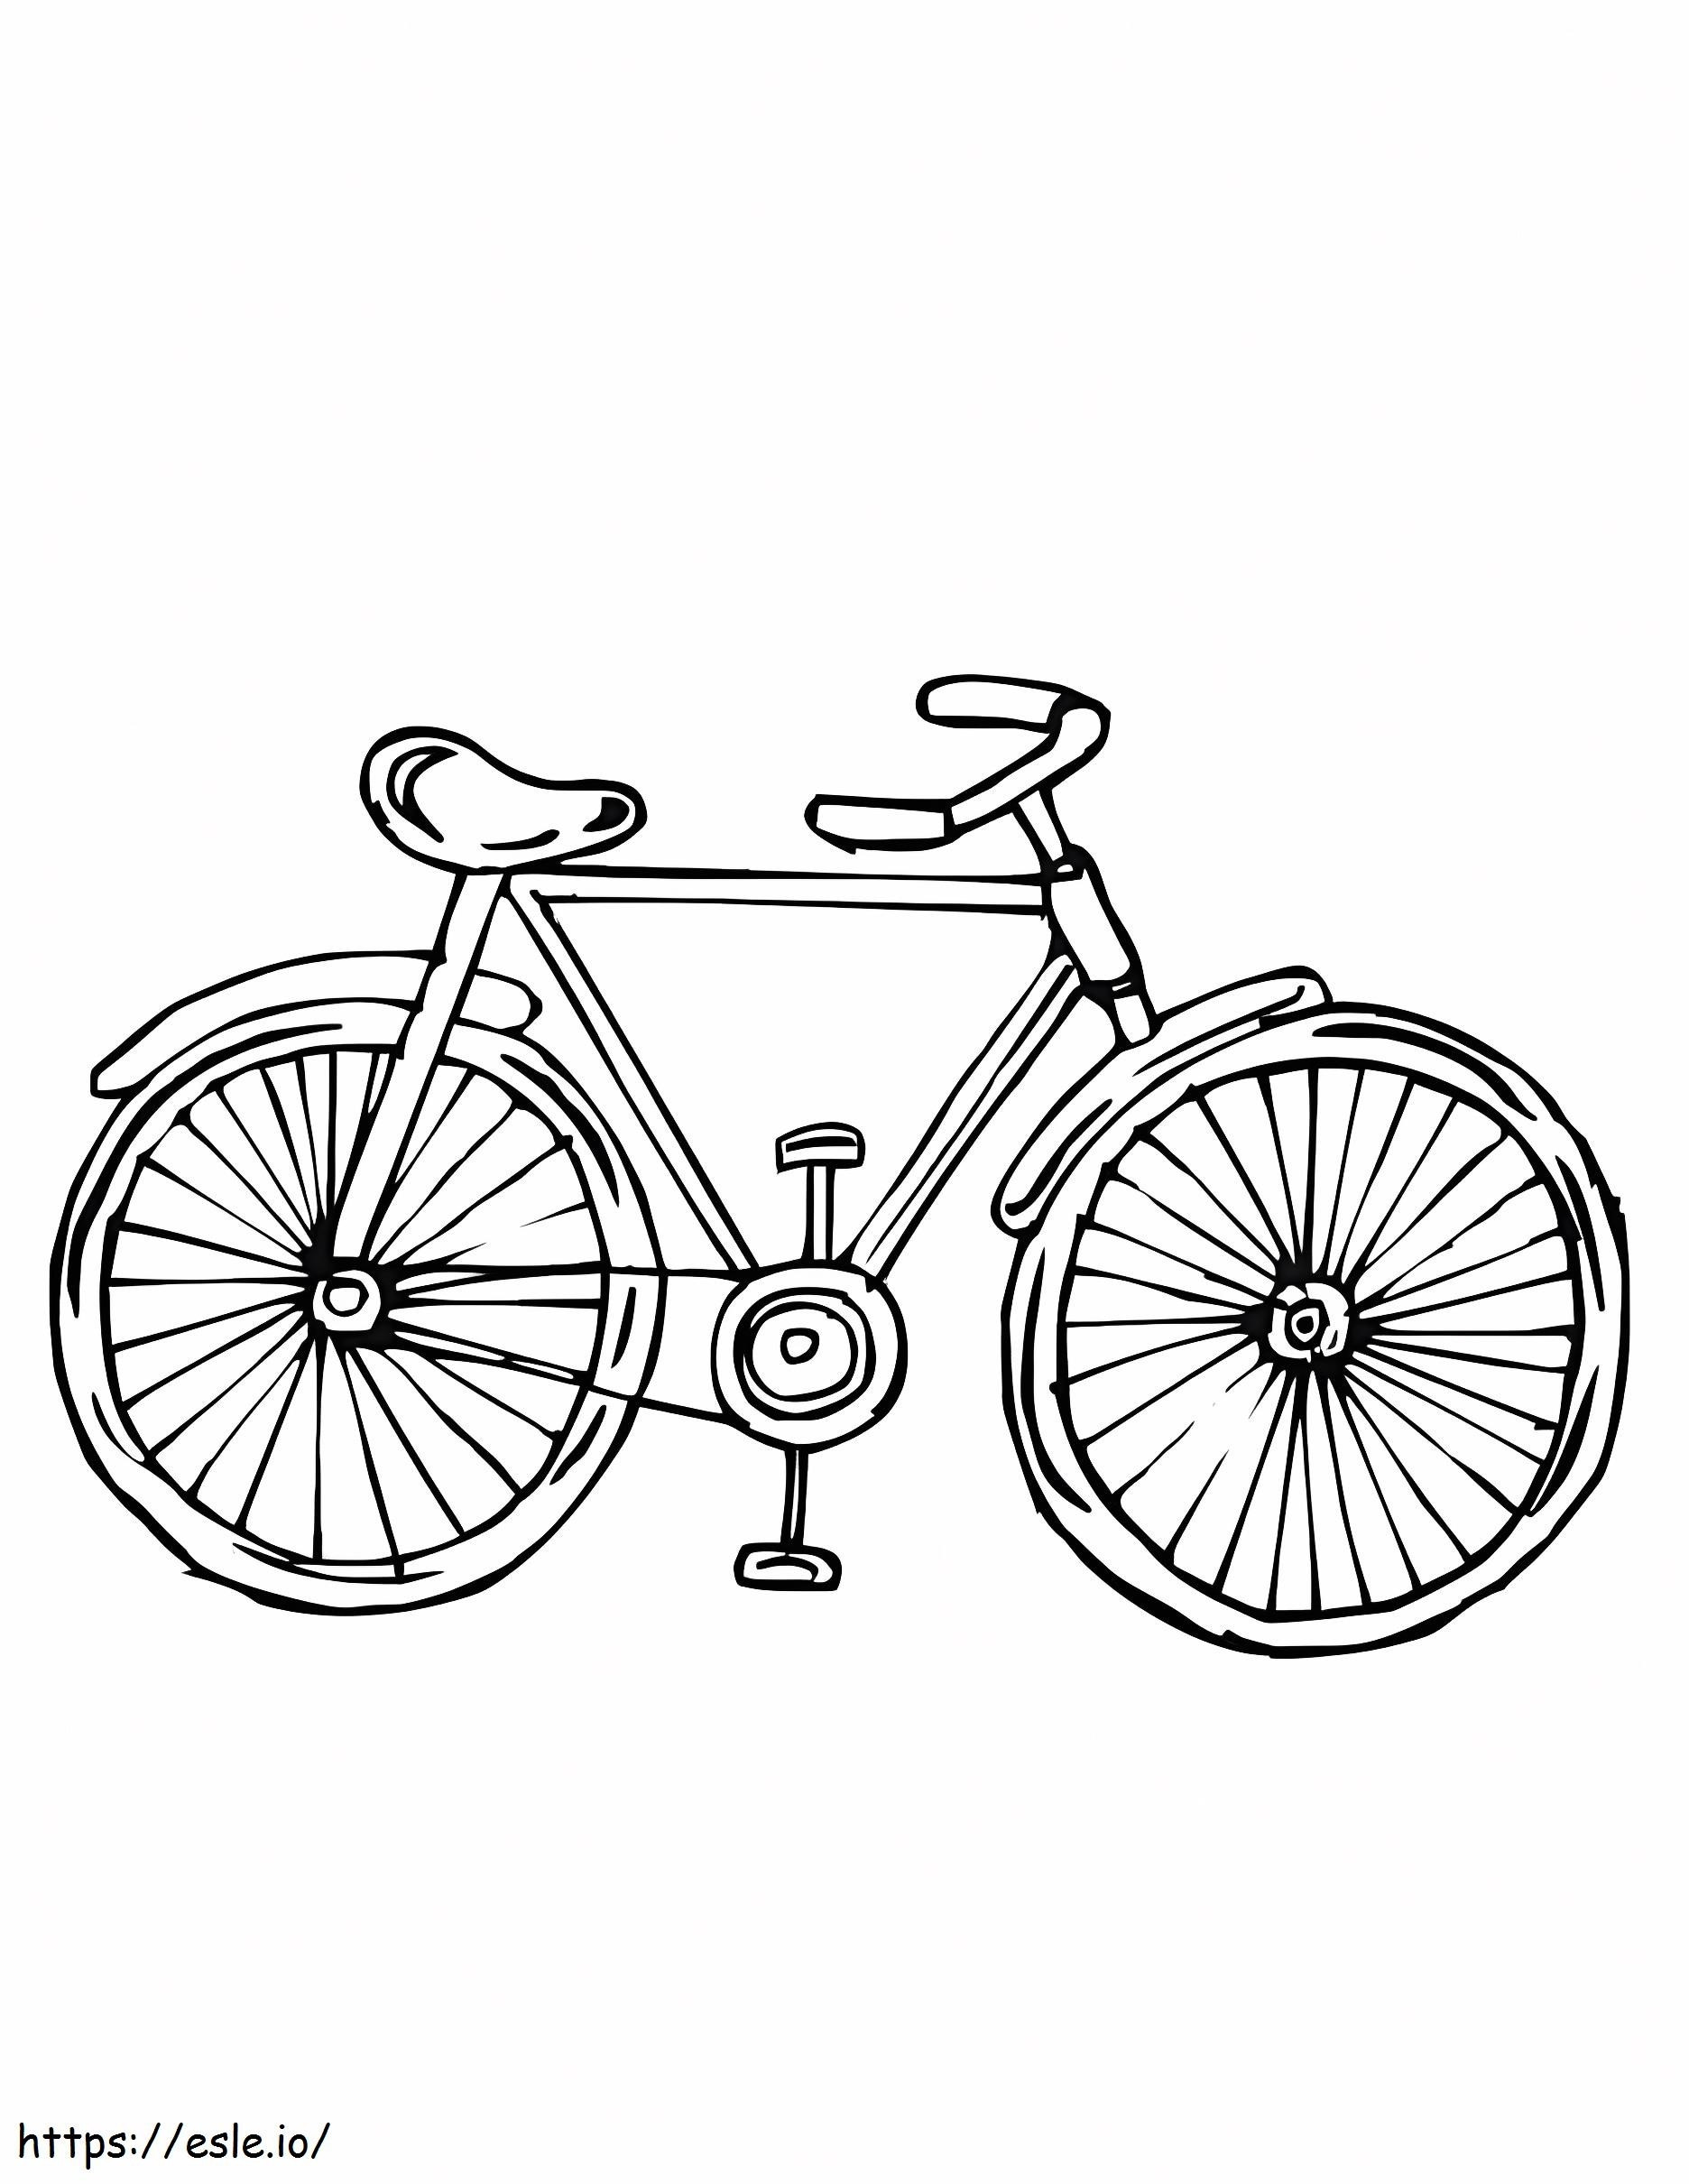 Beri Label Bagian-Bagian Sepeda Gambar Mewarnai